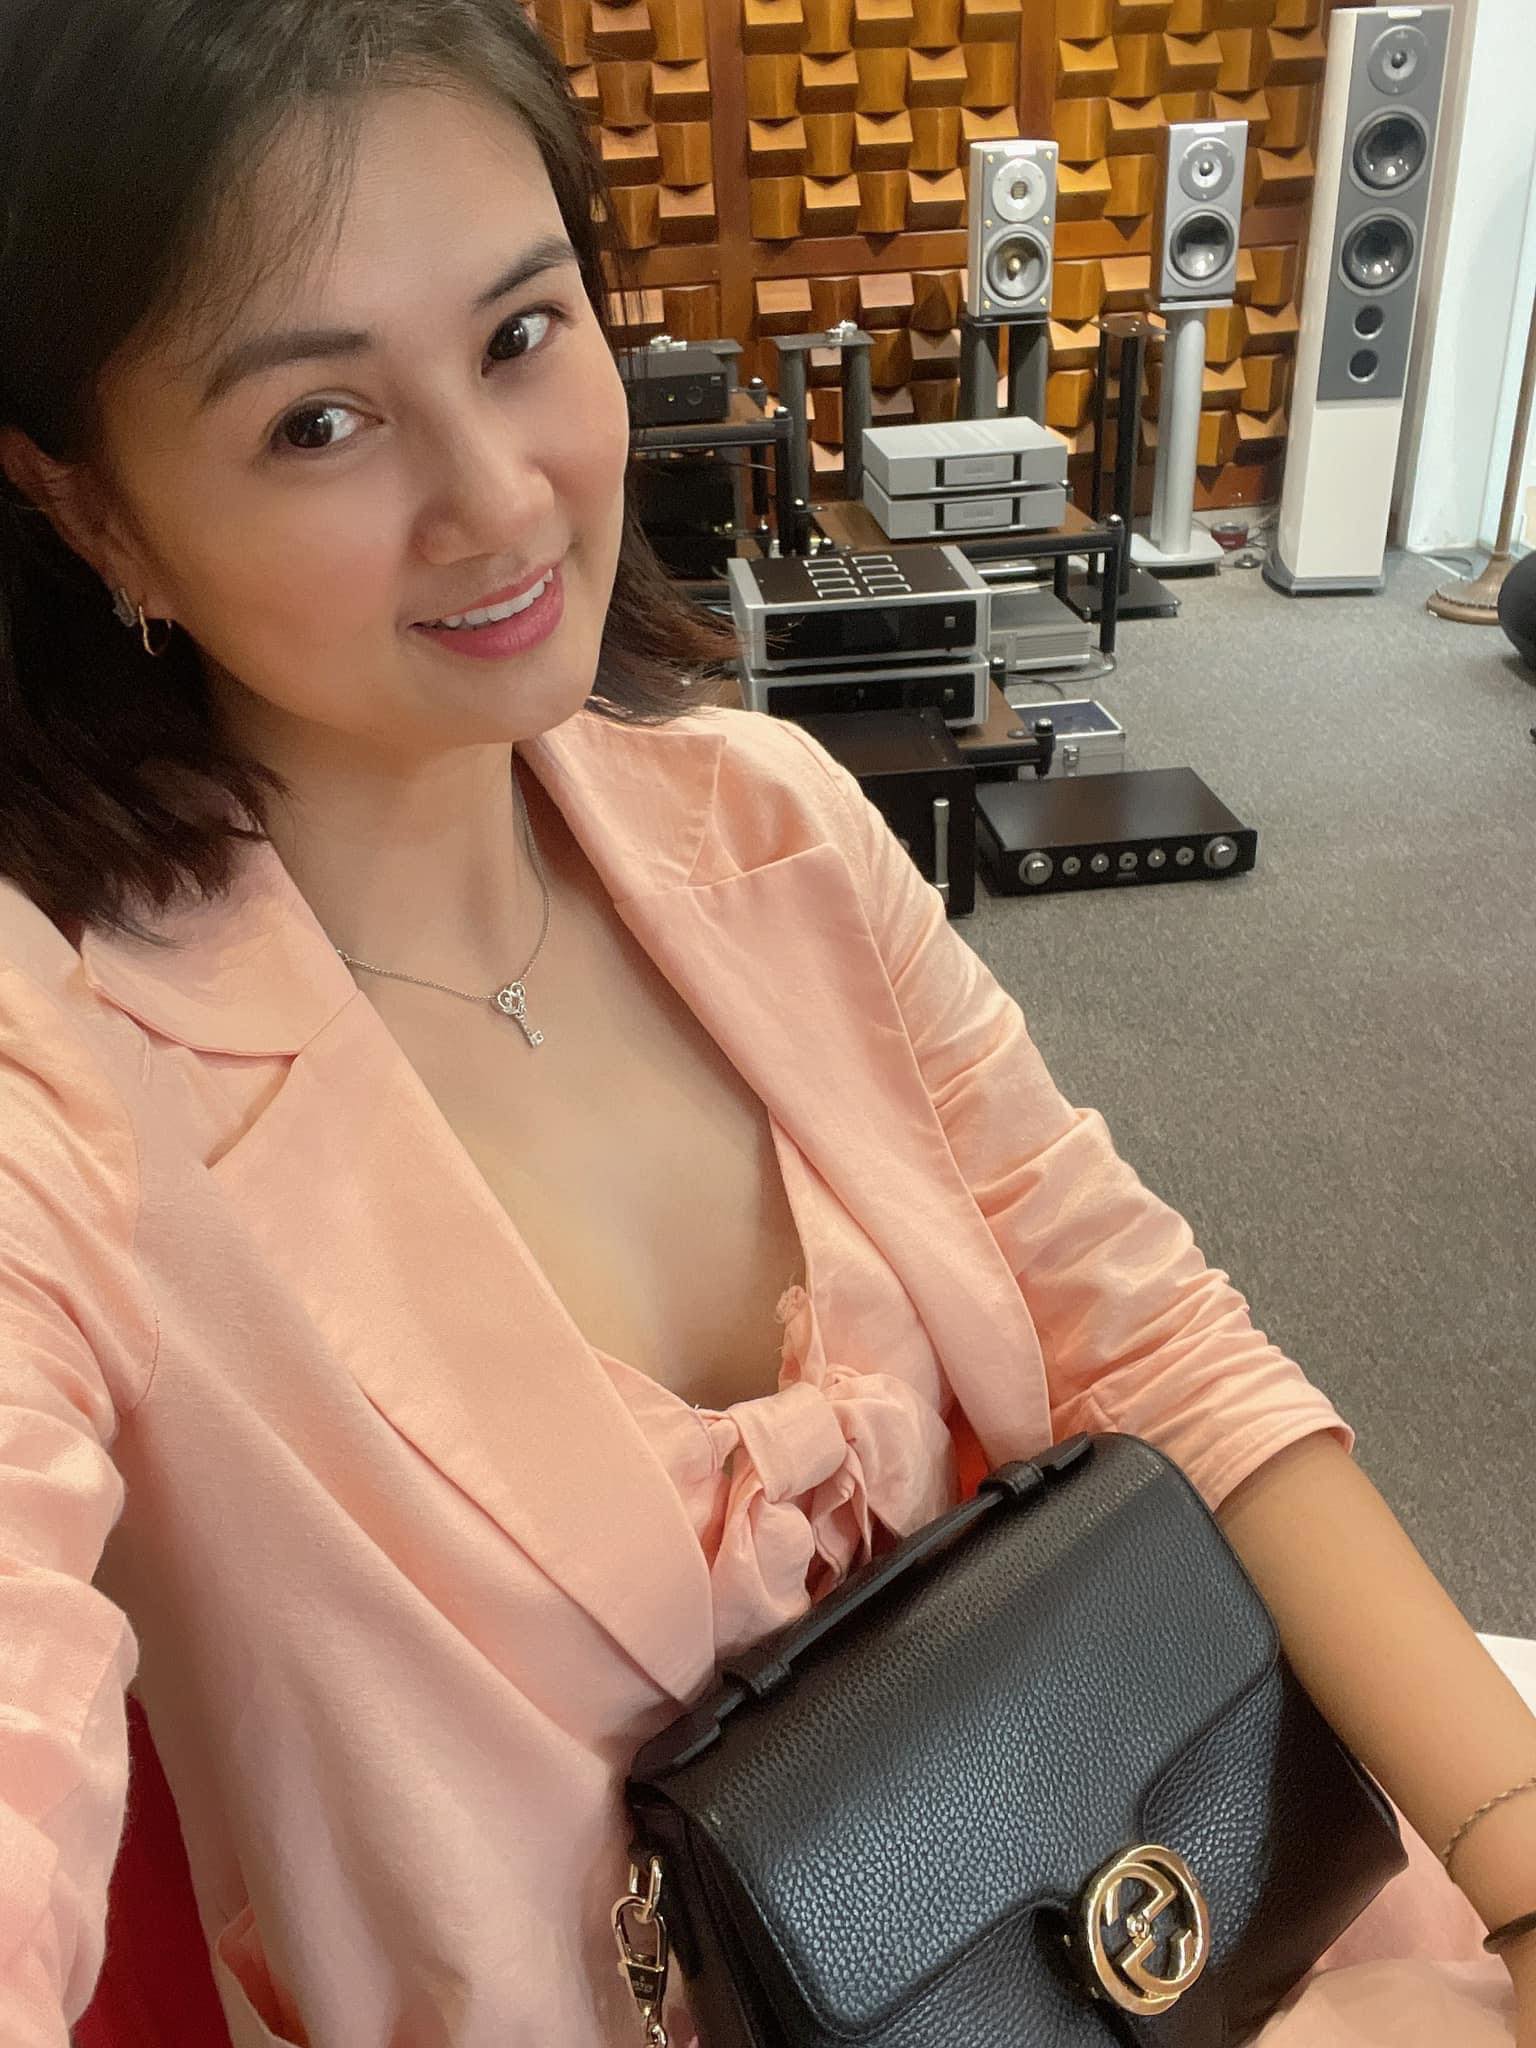 “Hoa khôi bóng chuyền” Kim Huệ gây bất ngờ khi mặc suit hay bikini đều quá nóng bỏng - 9